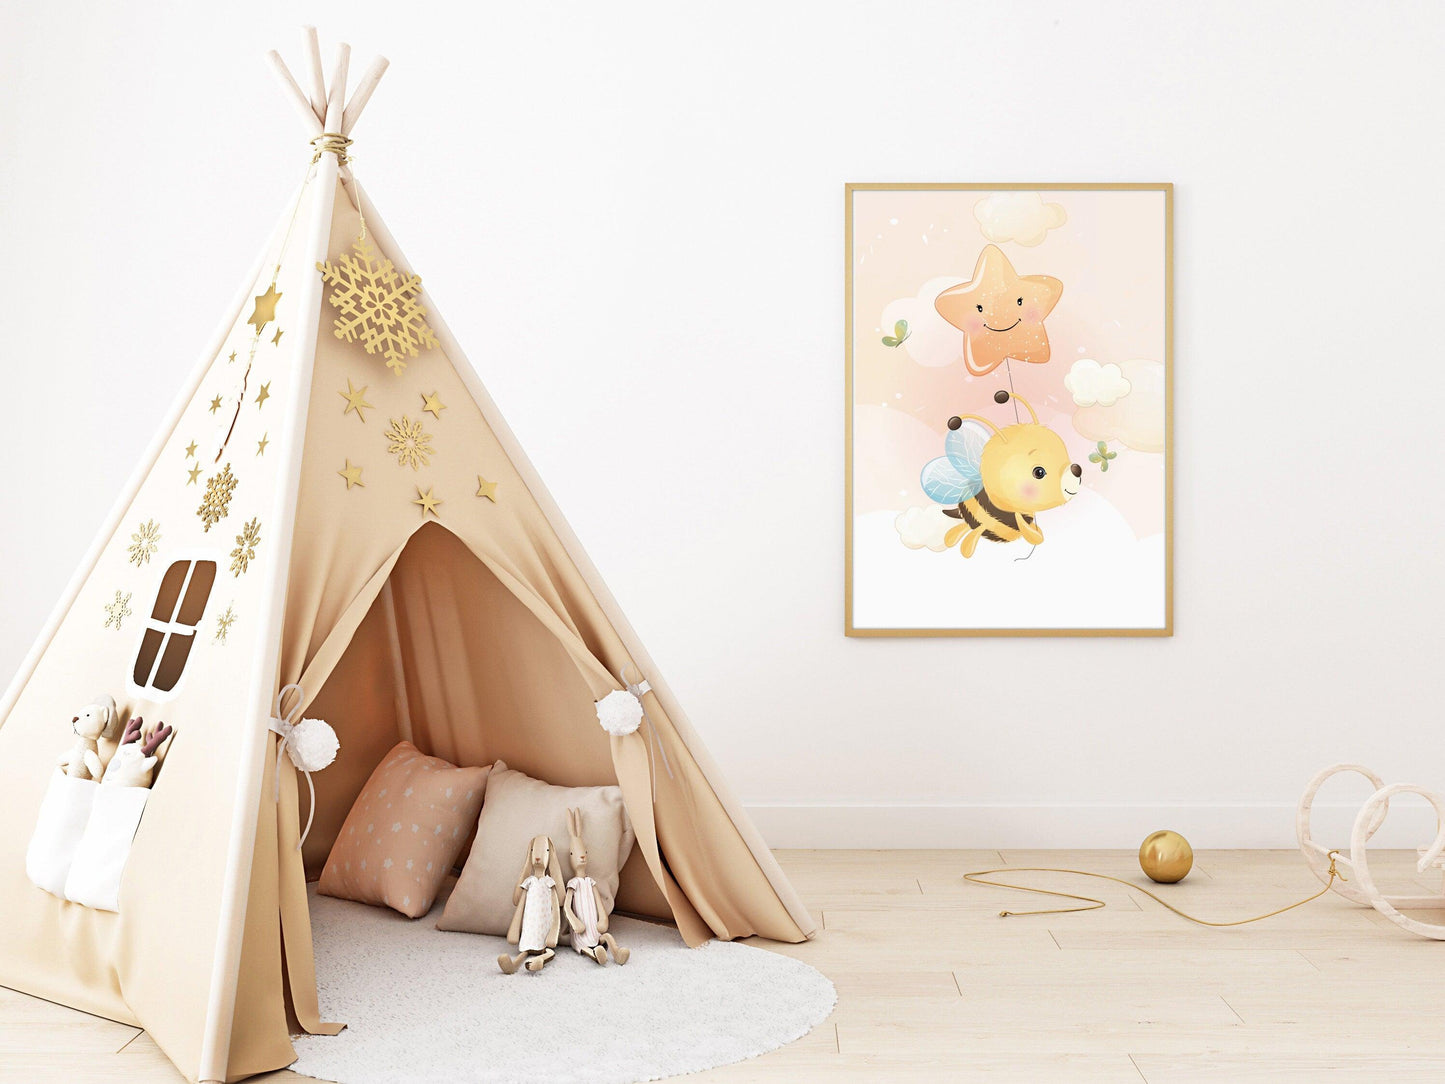 Affiches Abeille mignonne illustration - chambre enfant bébé - Décoration fille - Idée cadeau Naissance - Thème animaux - bee cute - A4 A3 - Imagine.affiche